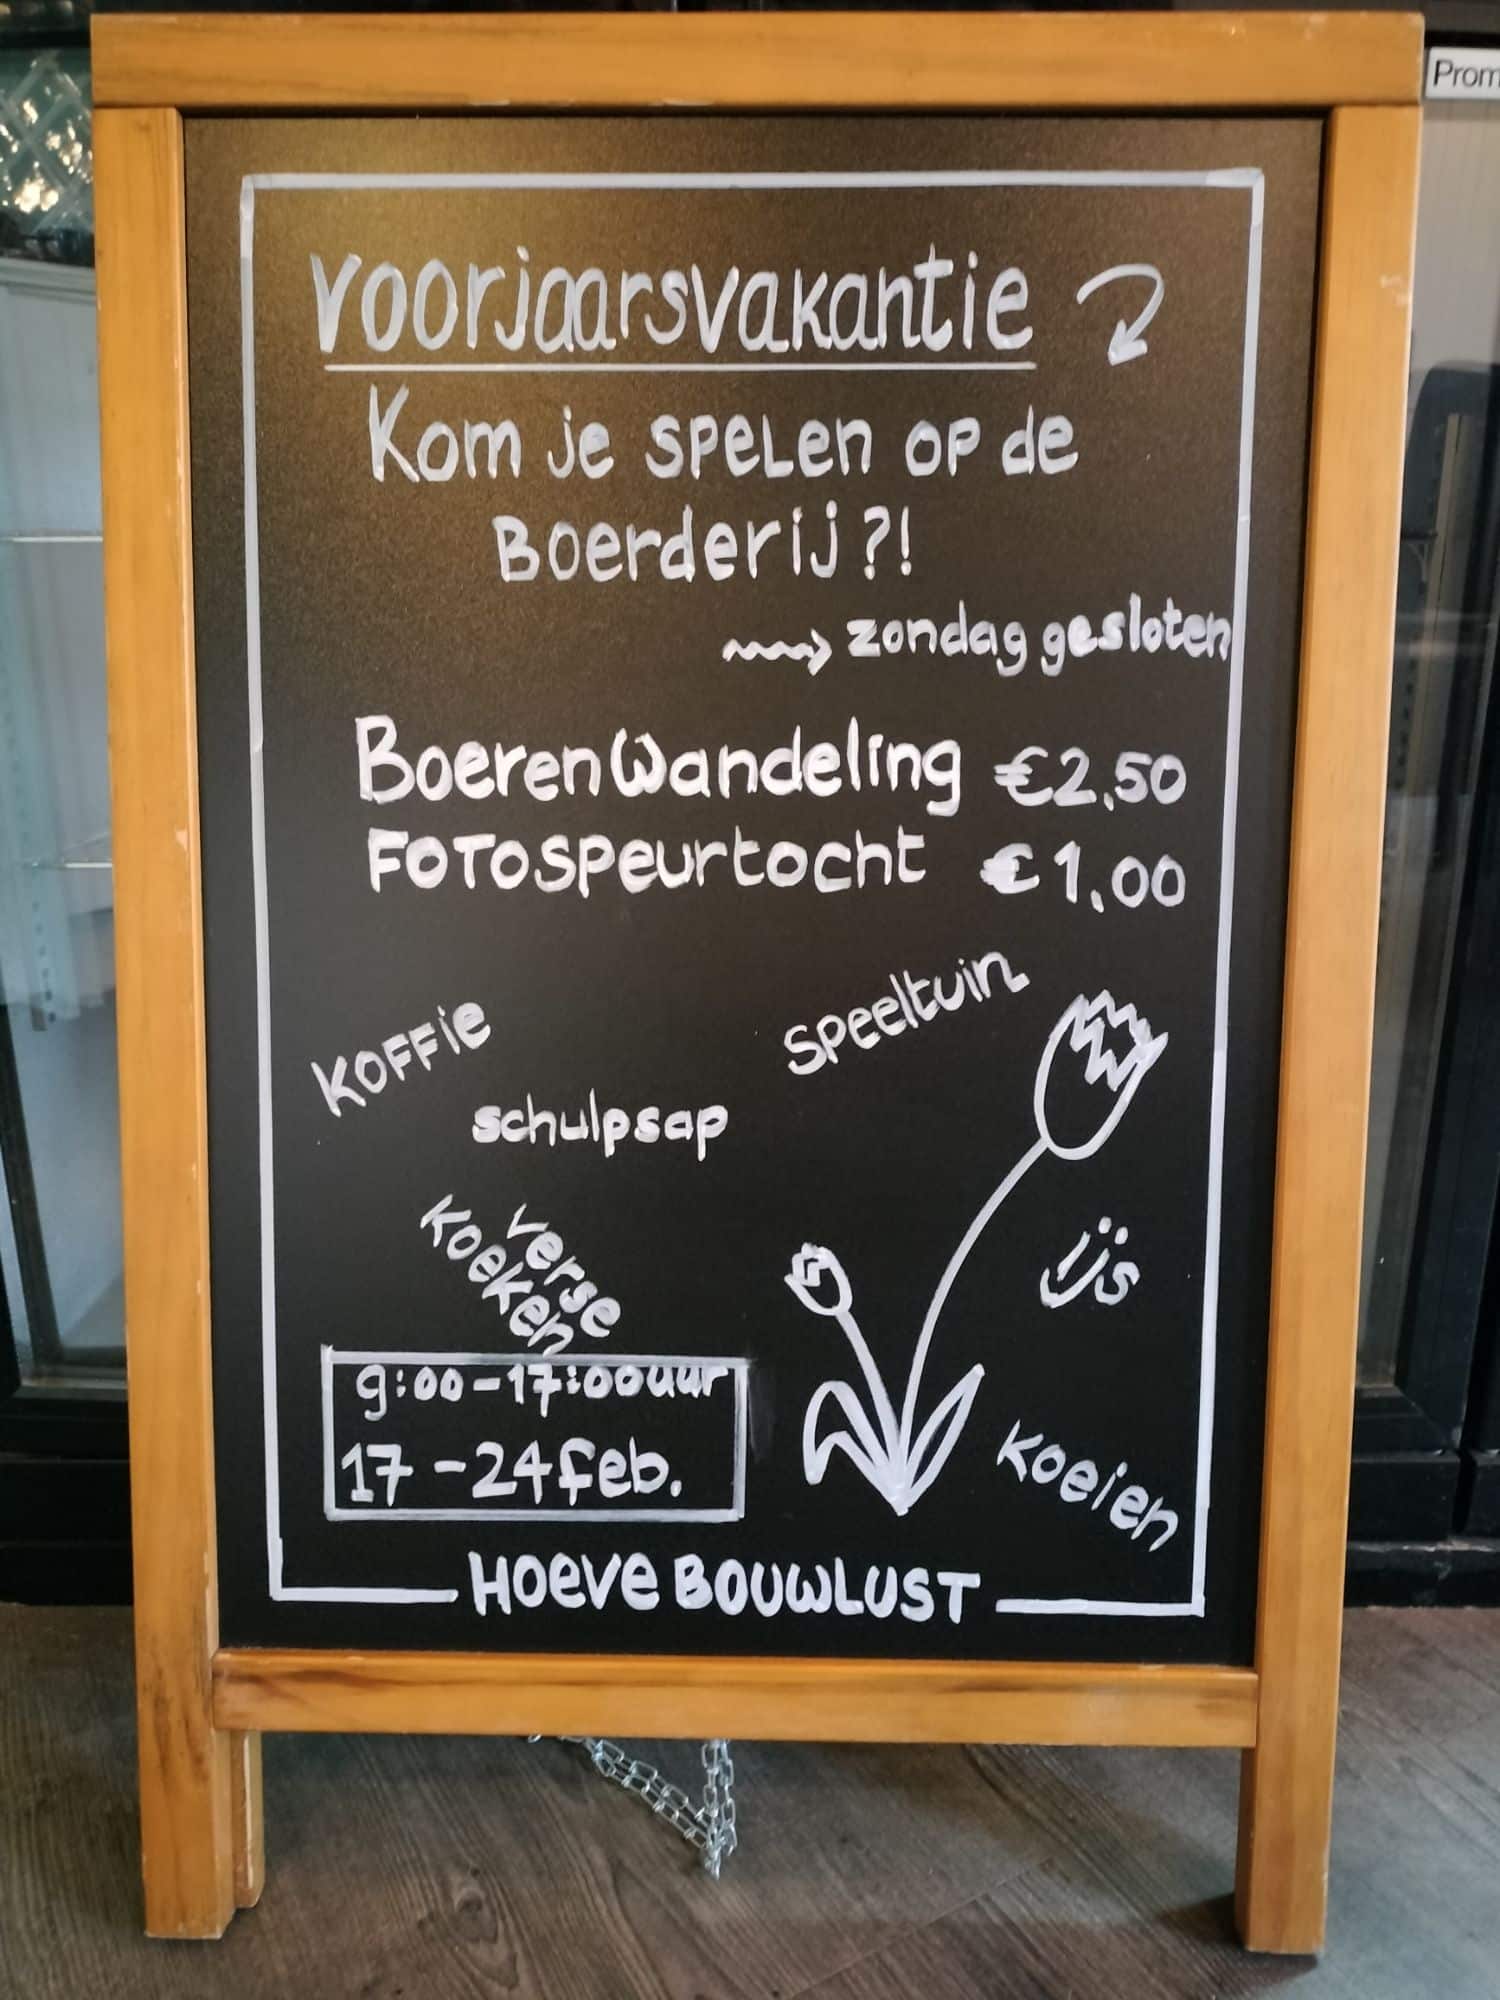 Featured image for “Voorjaarsvakantie!”